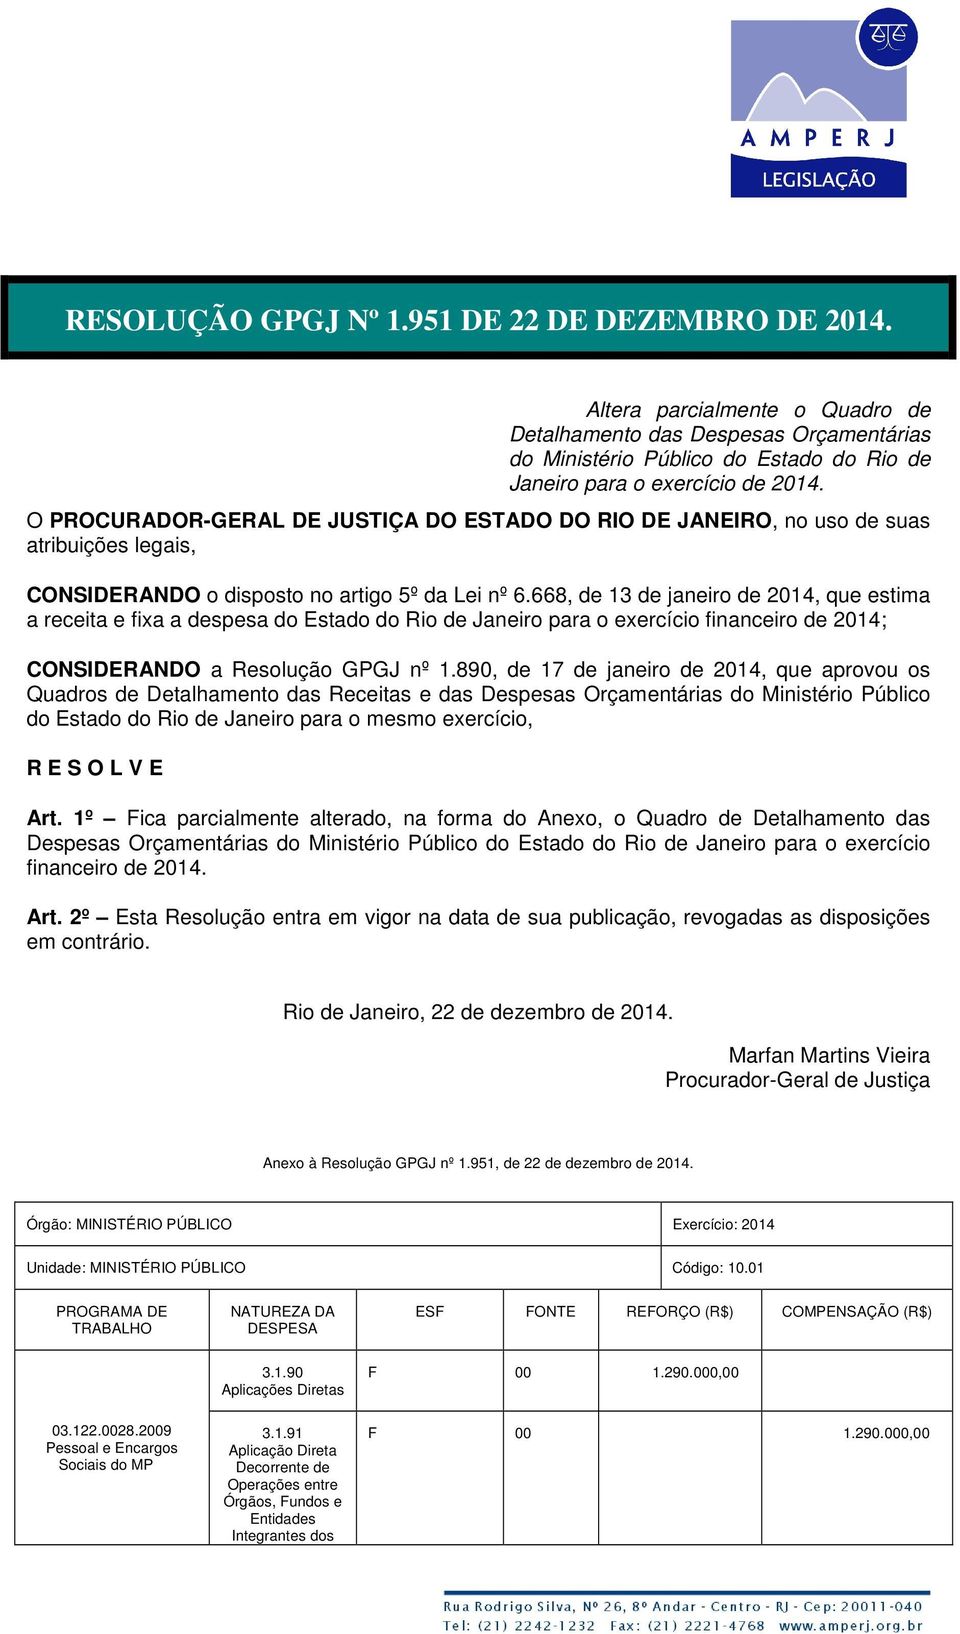 668, de 13 de janeiro de 2014, que estima a receita e fixa a despesa do Estado do Rio de Janeiro para o exercício financeiro de 2014; CONSIDERANDO a Resolução GPGJ nº 1.